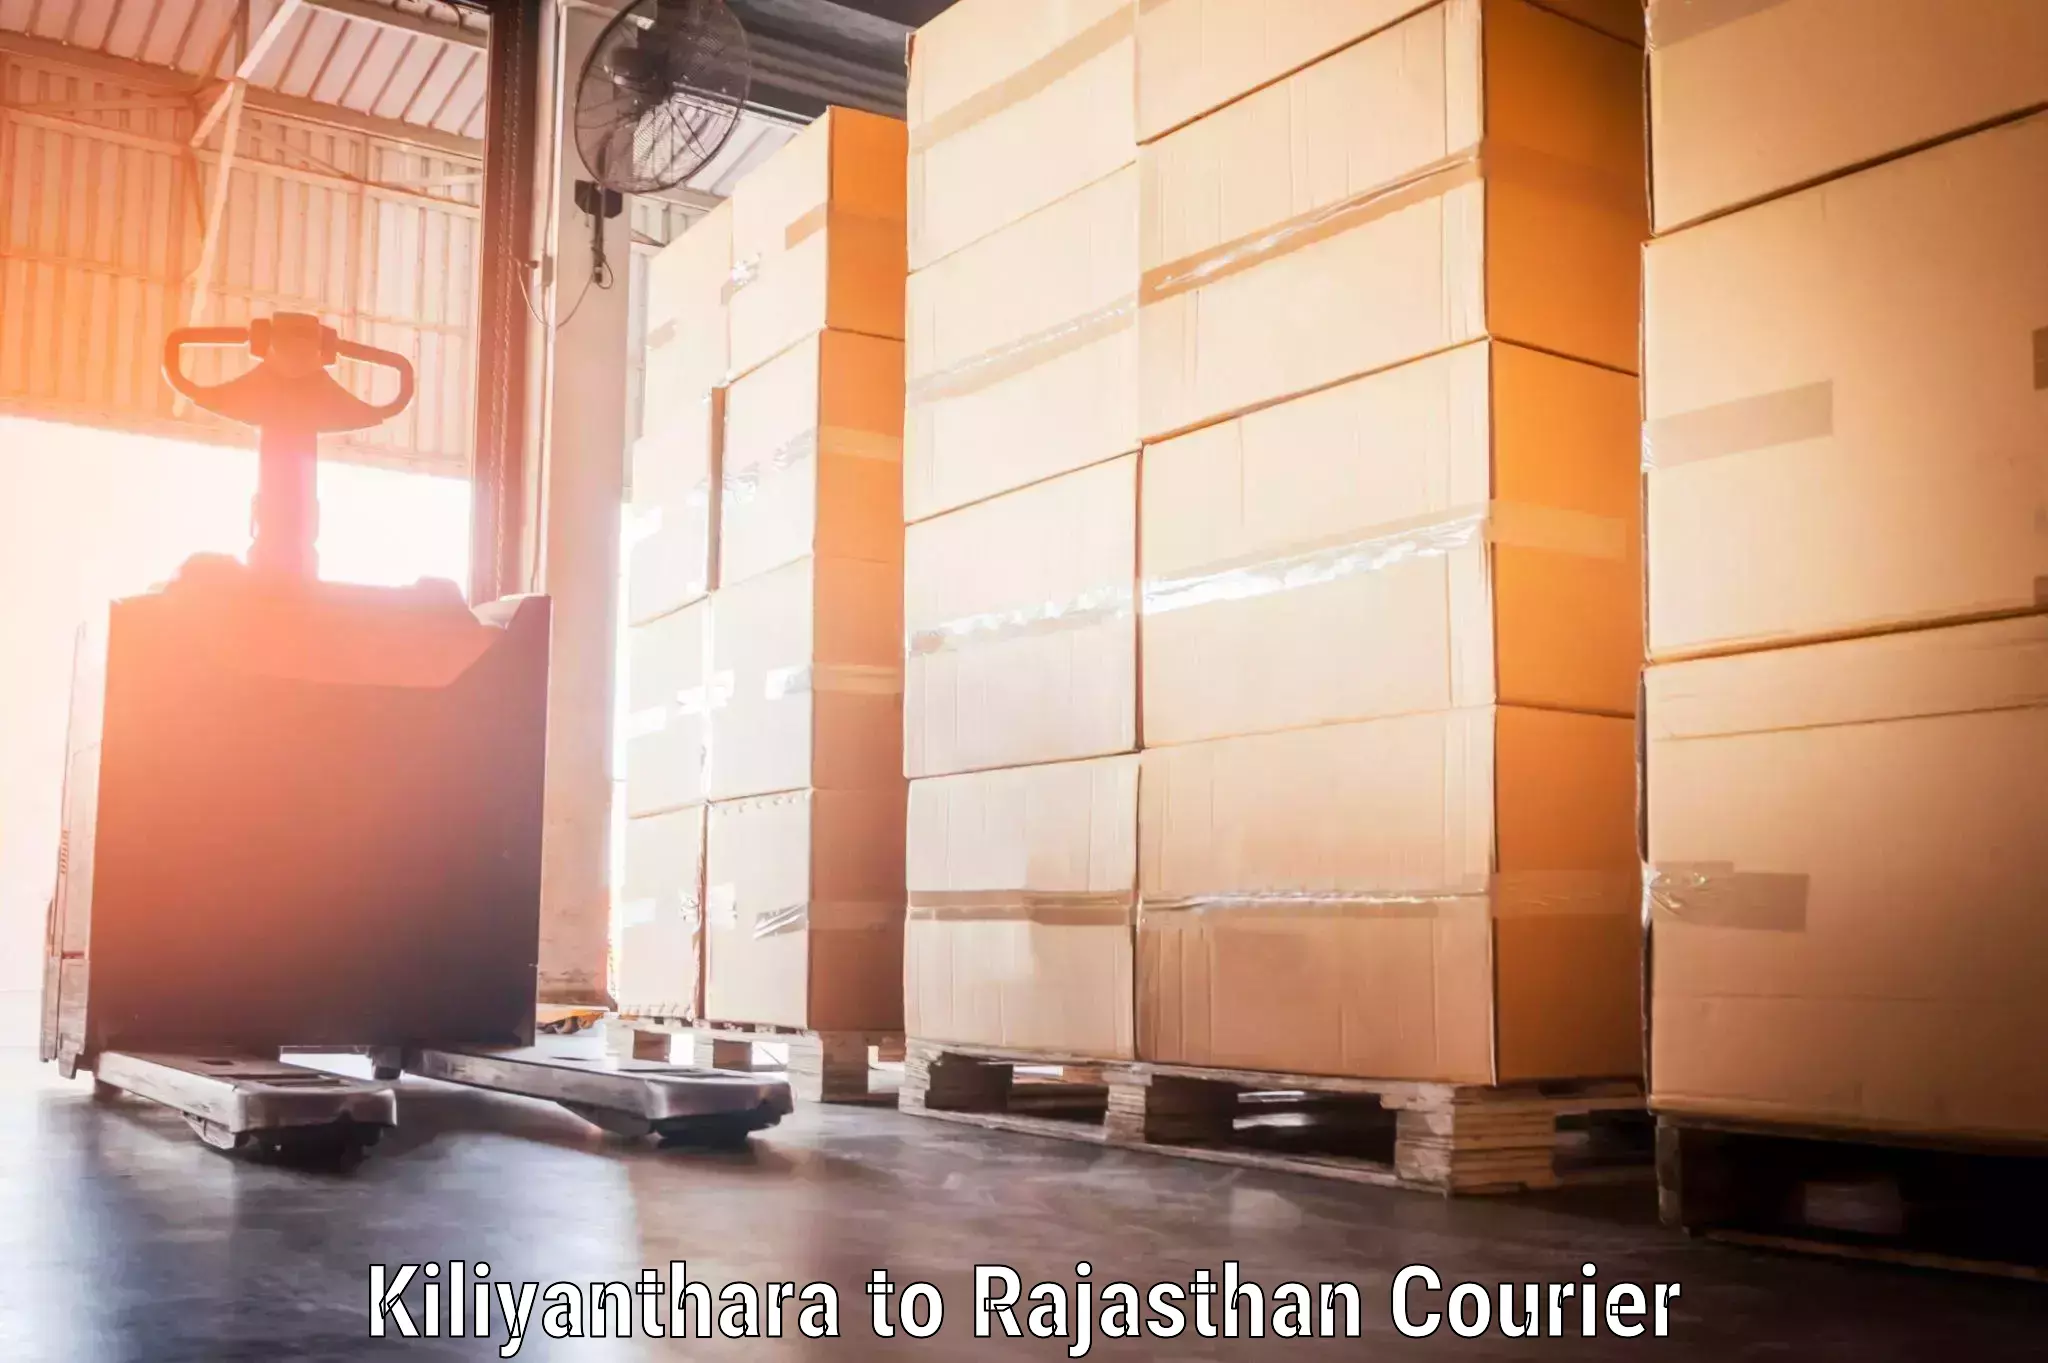 Baggage courier guide Kiliyanthara to Viratnagar